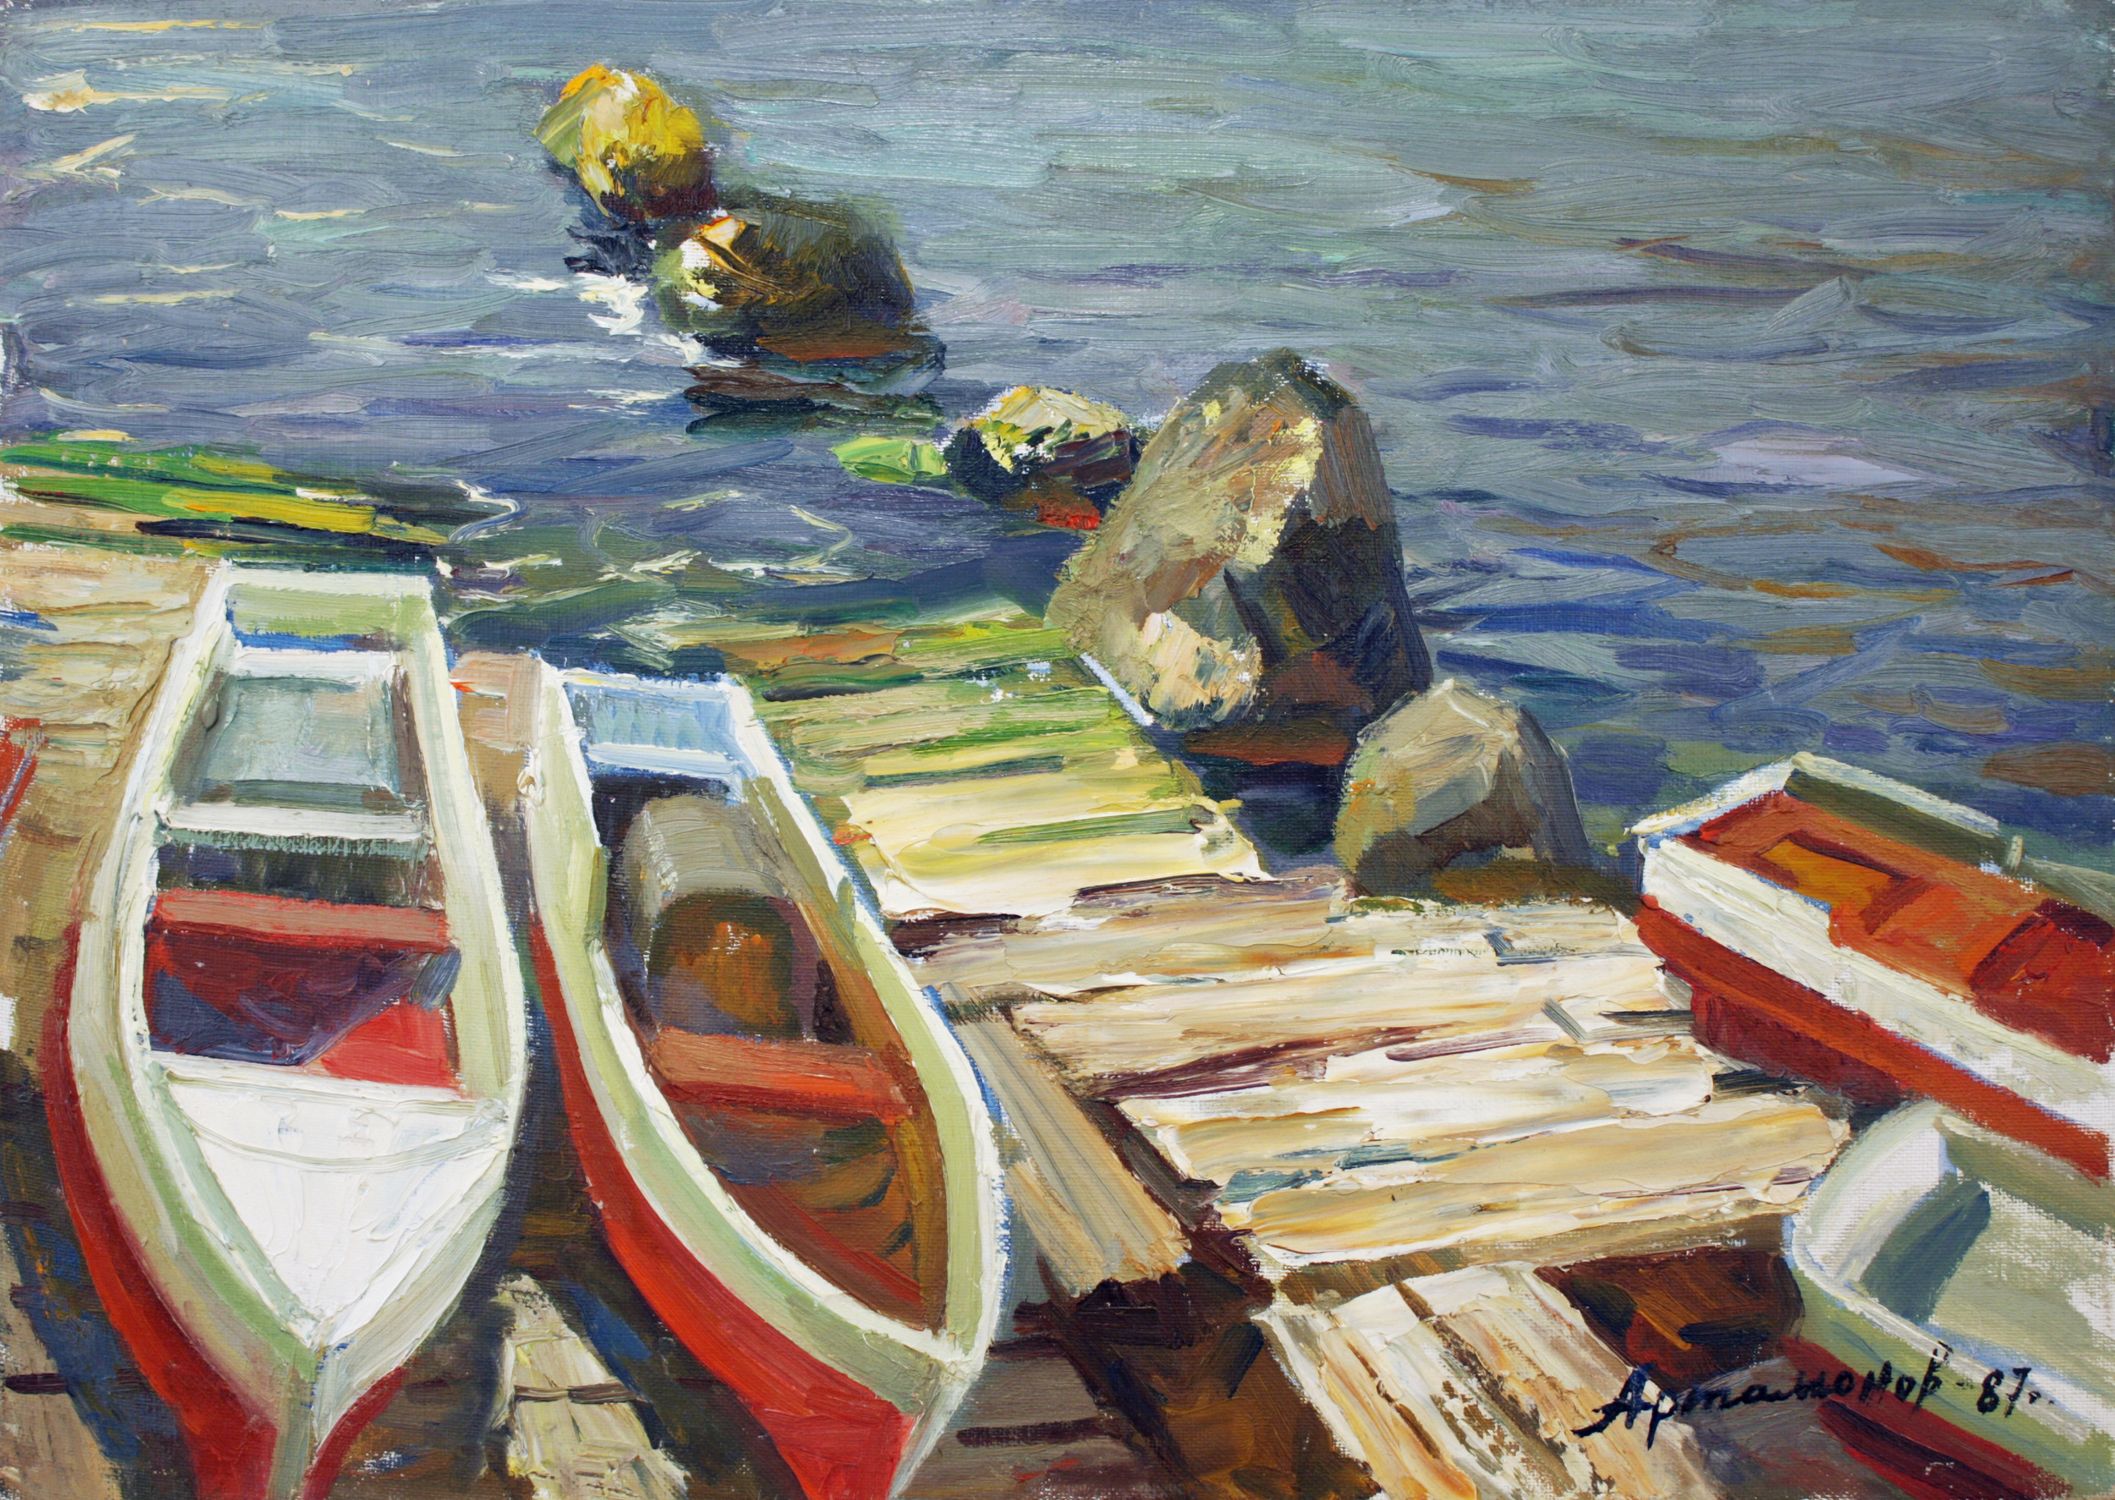 "Boats at the marina"